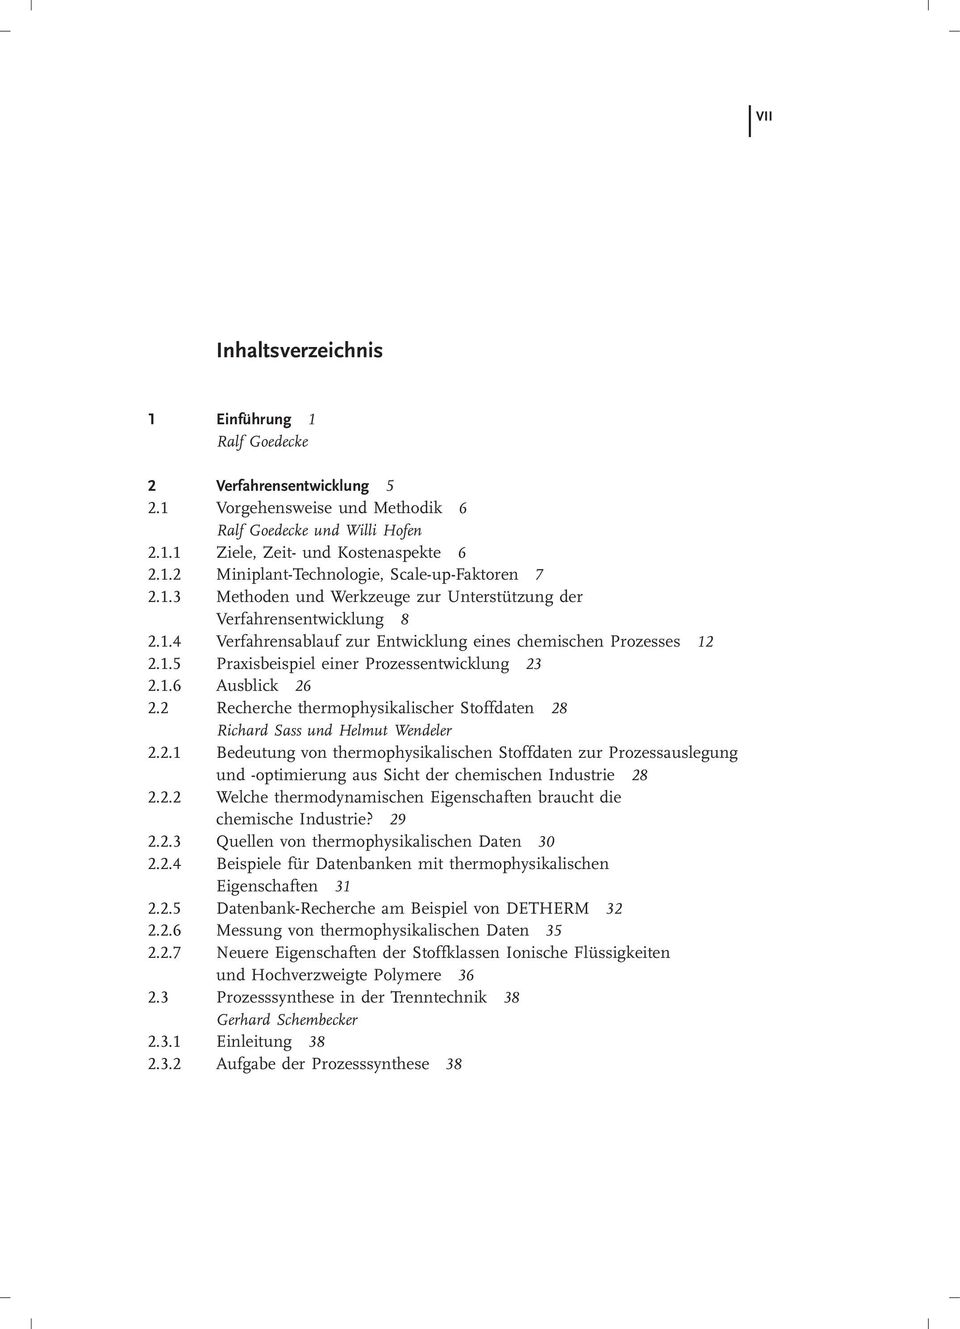 1.6 Ausblick 26 2.2 Recherche thermophysikalischer Stoffdaten 28 Richard Sass und Helmut Wendeler 2.2.1 Bedeutung von thermophysikalischen Stoffdaten zur Prozessauslegung und -optimierung aus Sicht der chemischen Industrie 28 2.